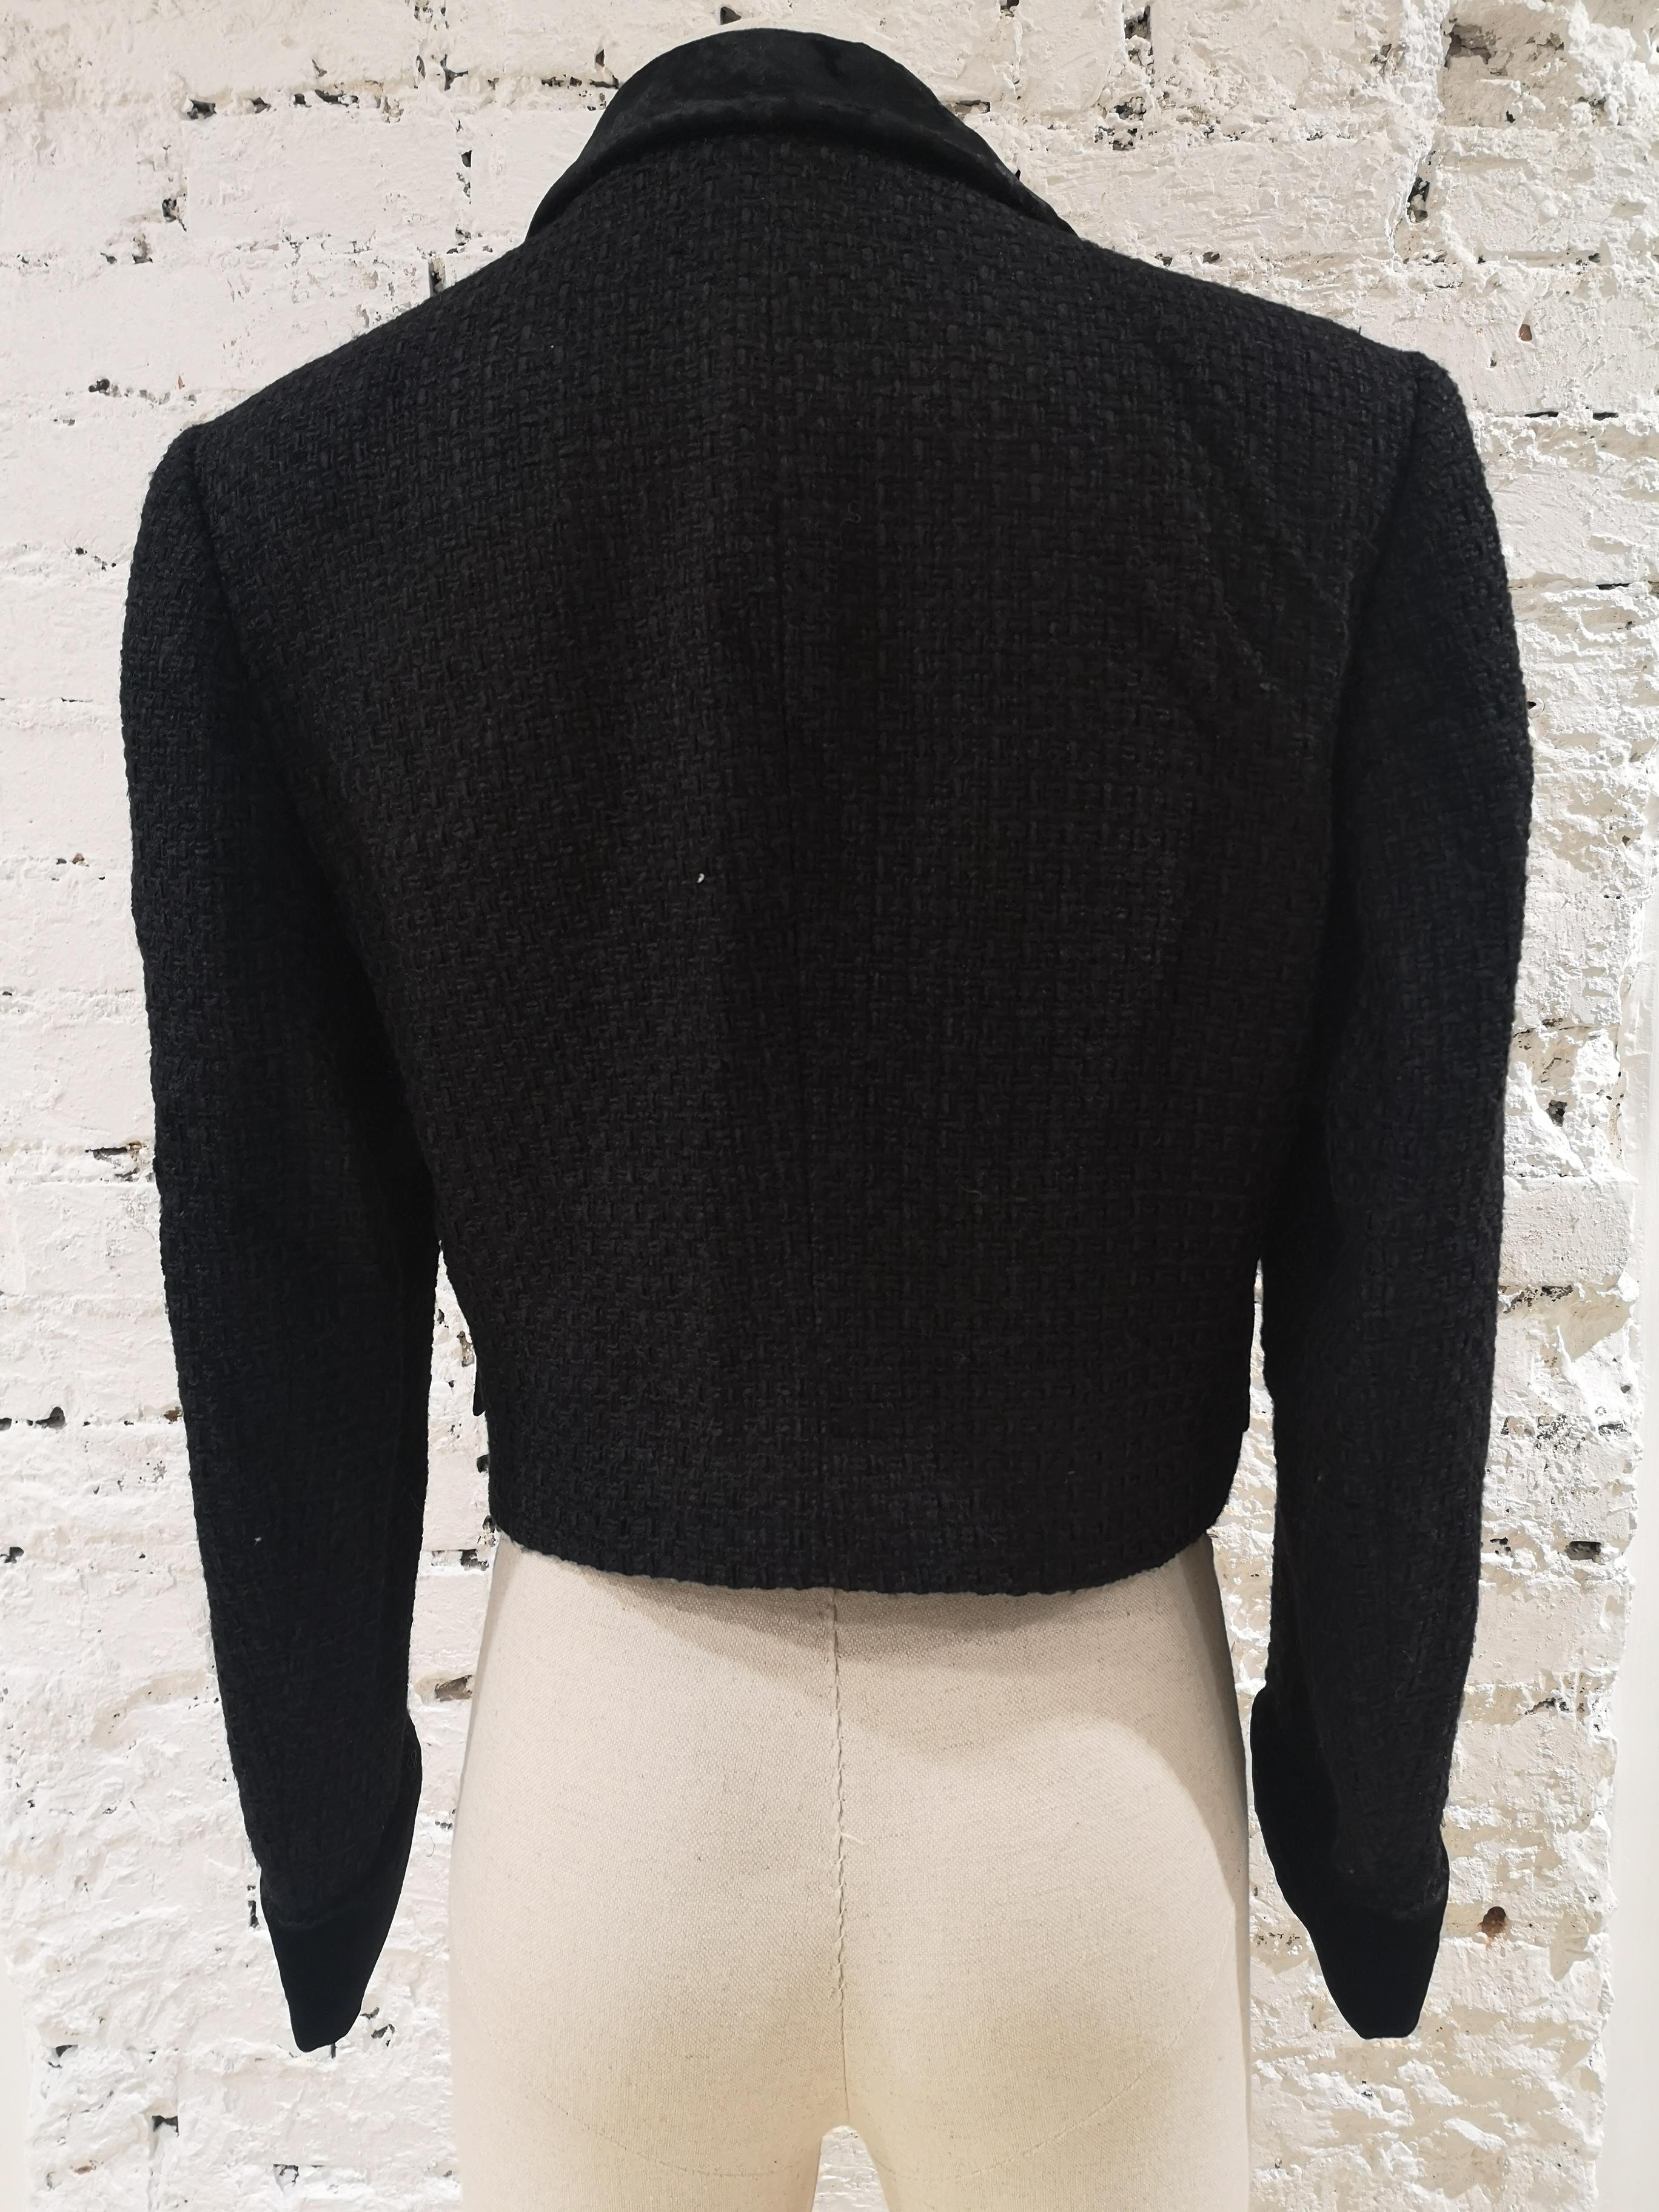 Valentino veste en laine noire
Veste en laine noire totalement made in italy, col en velours
totalement fabriqué en italie en taille 42